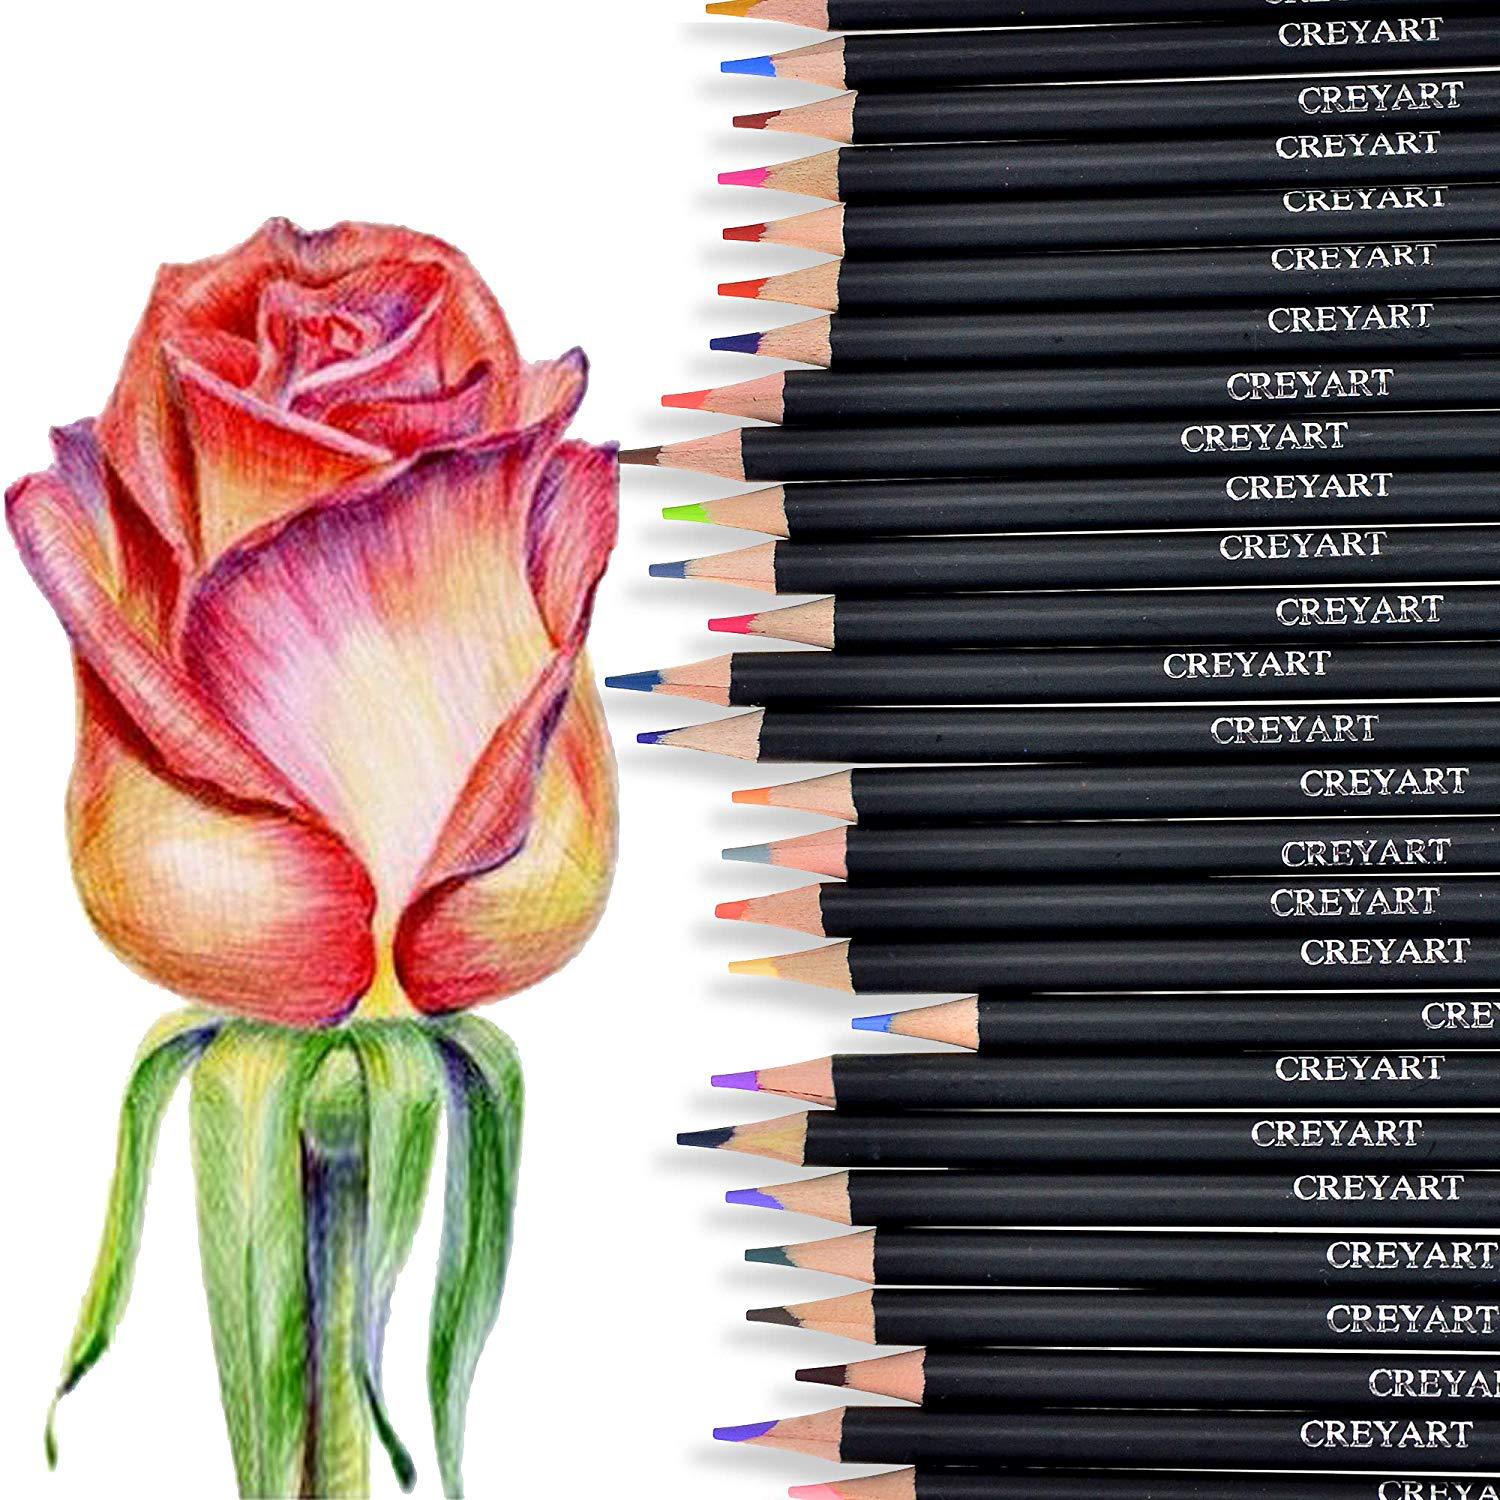  цветных карандашей для рисования YOVER 120 цветов - ART-market